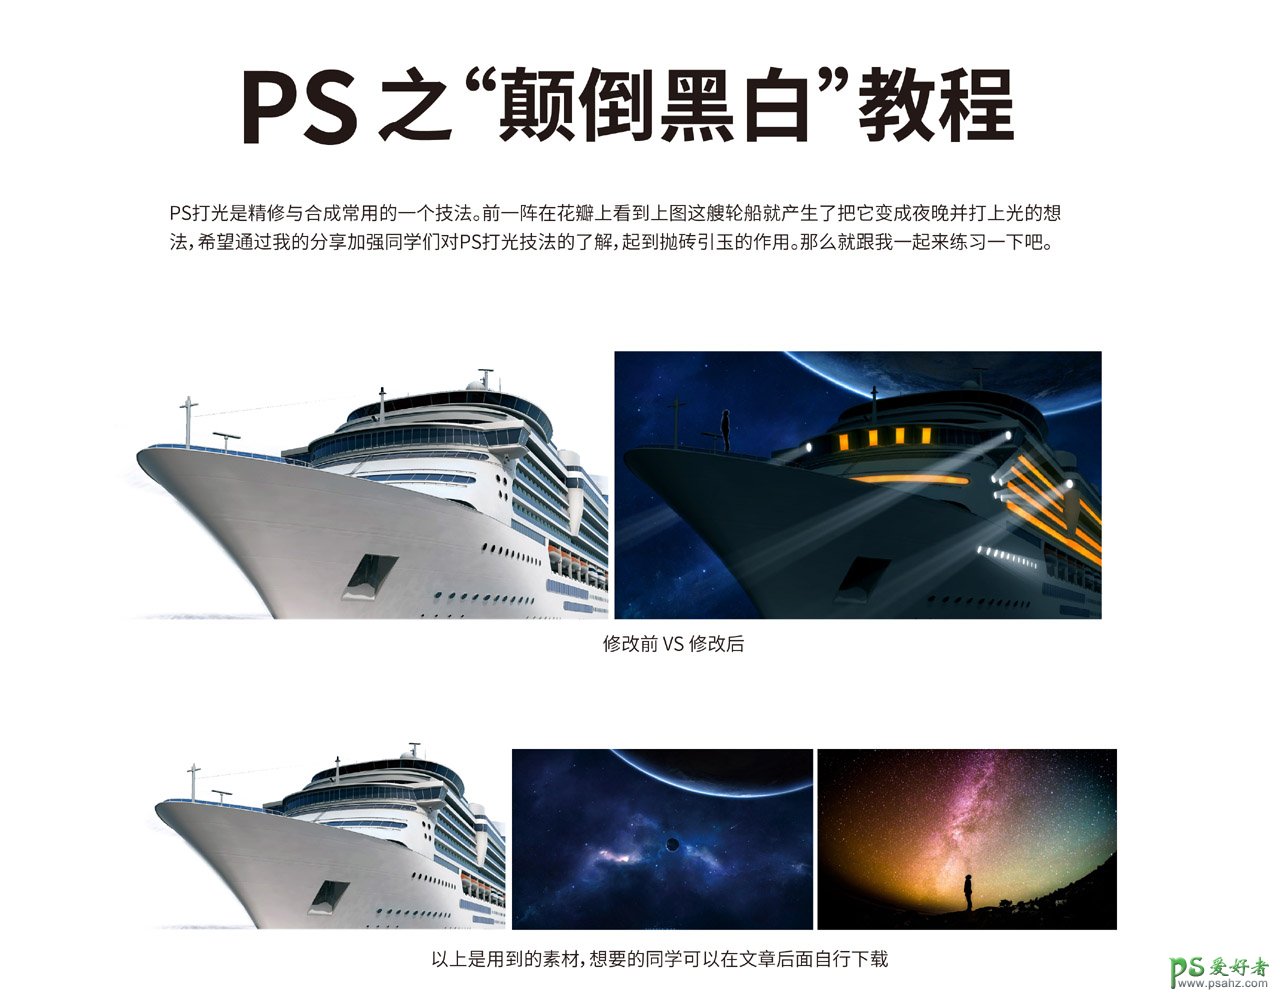 PS图片特效制作实例：学习给轮船图片加上炫丽的星空及灯光特效。